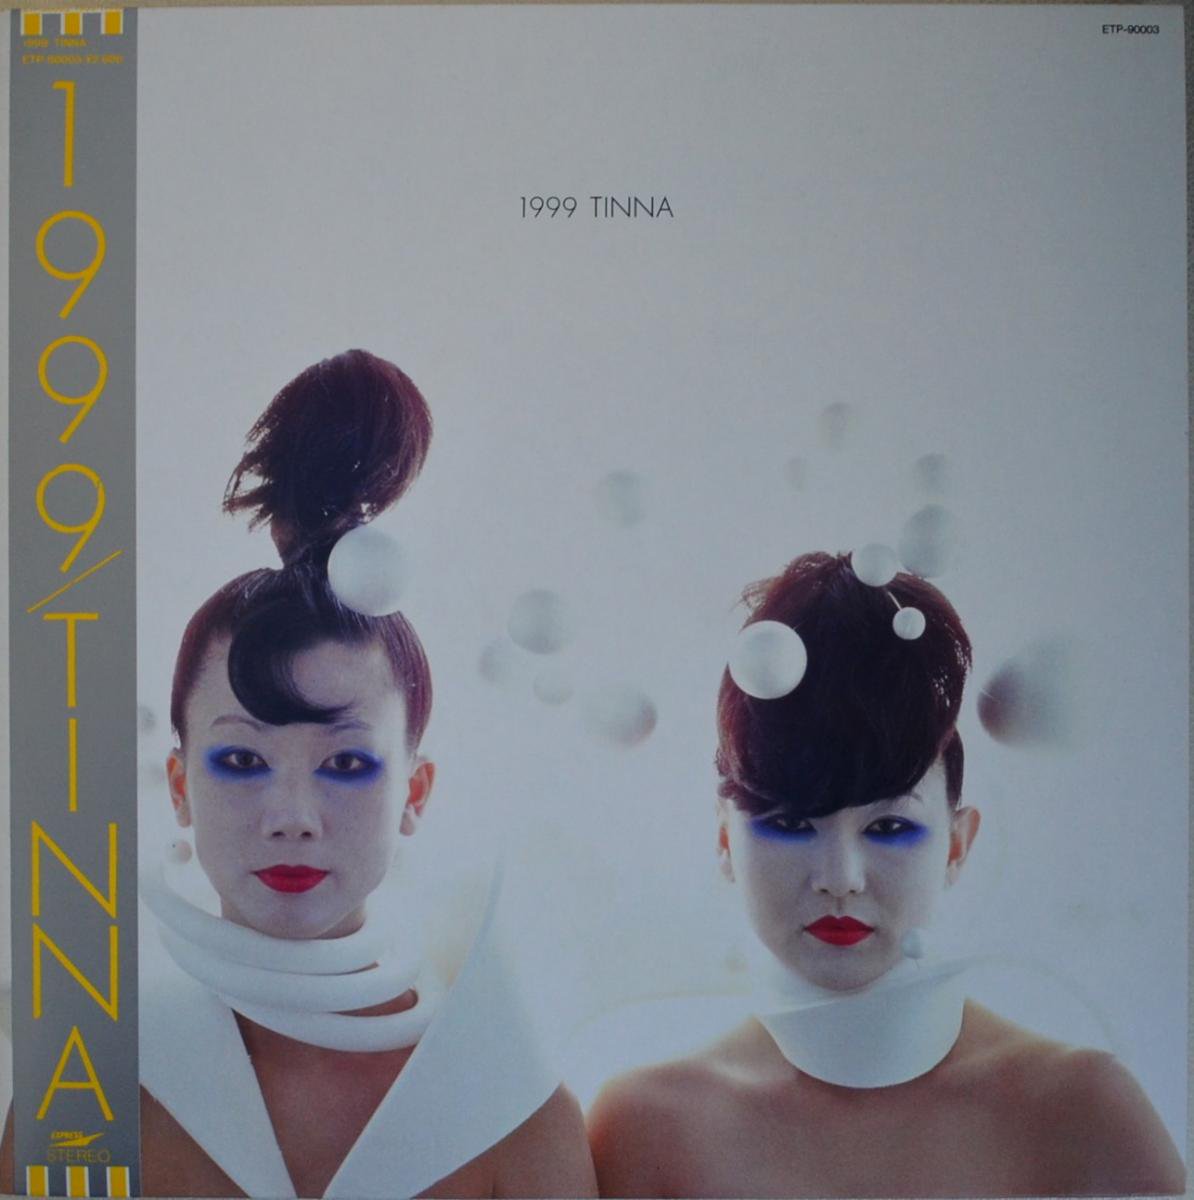 ティナ TINNA / 1999 (LP)